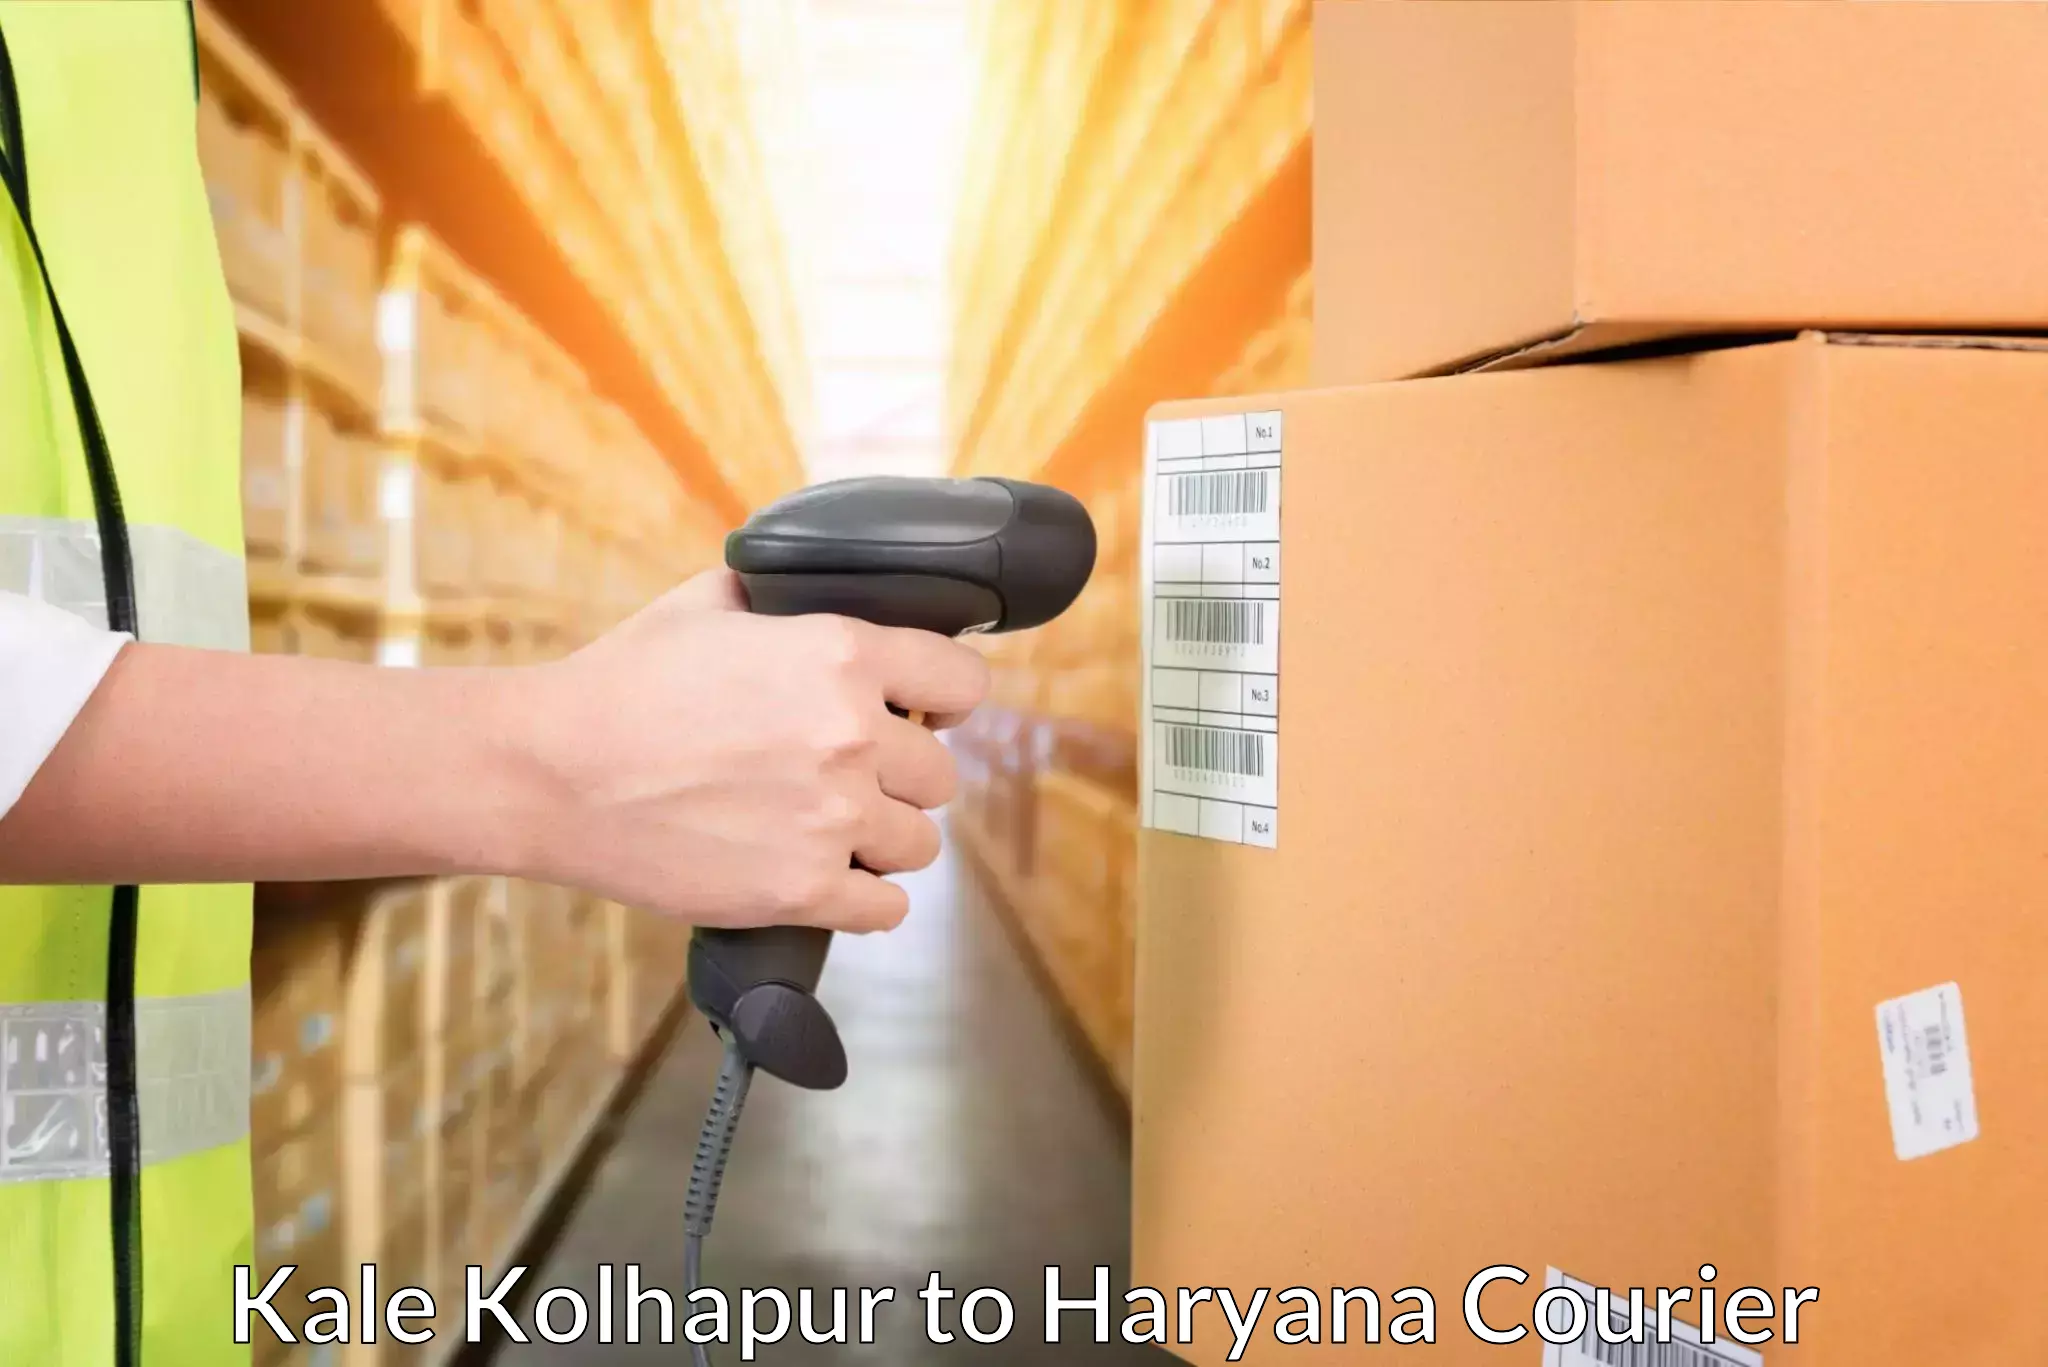 Shipping and handling Kale Kolhapur to Haryana